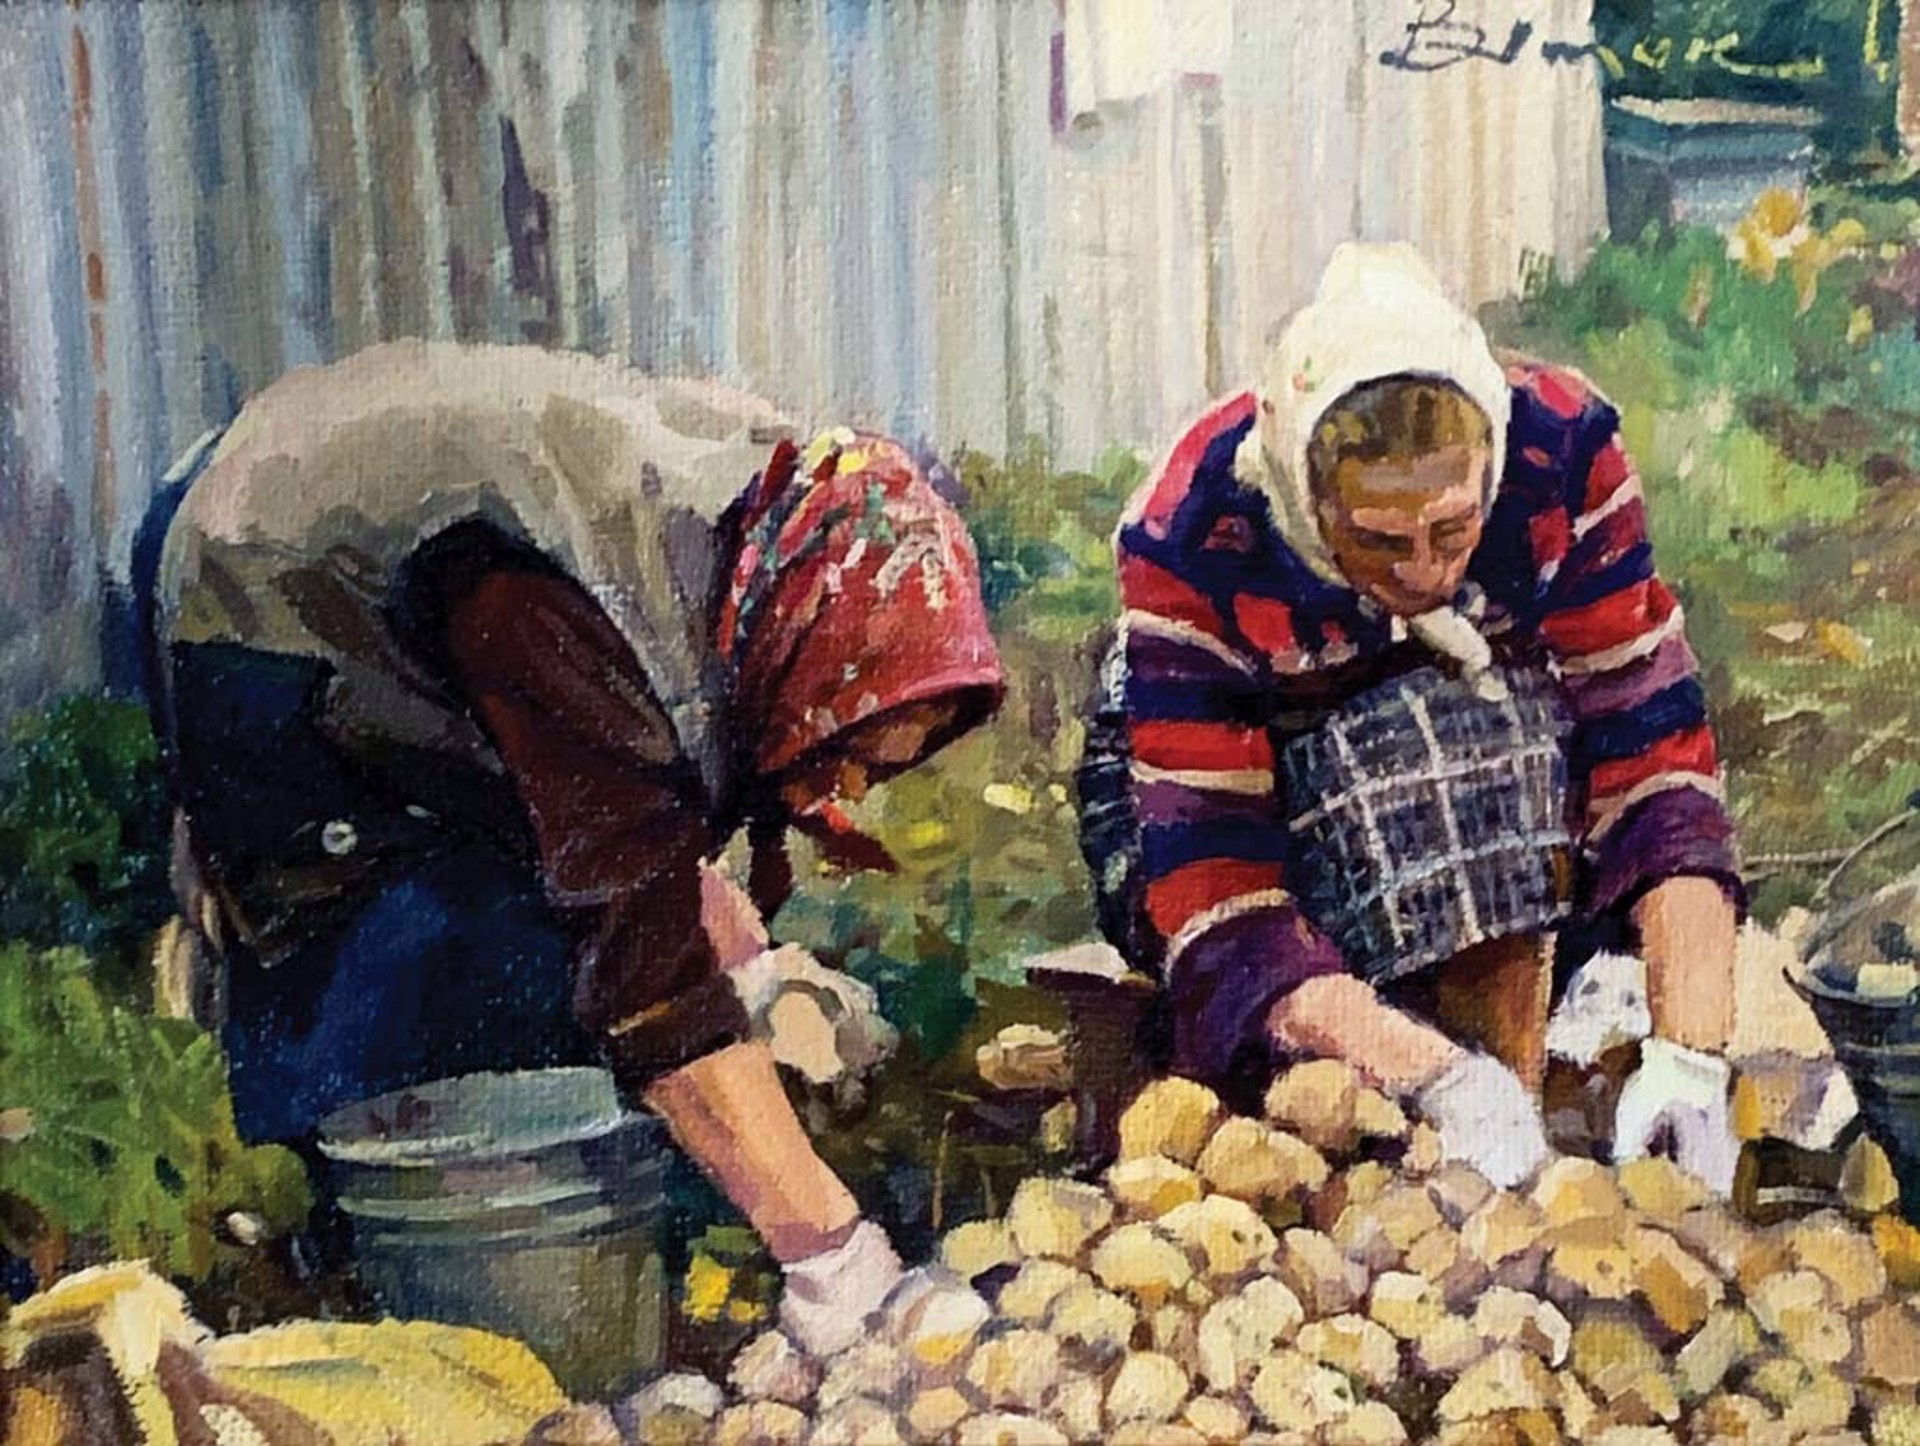 Digging Potatoes by Ivan Vityuk